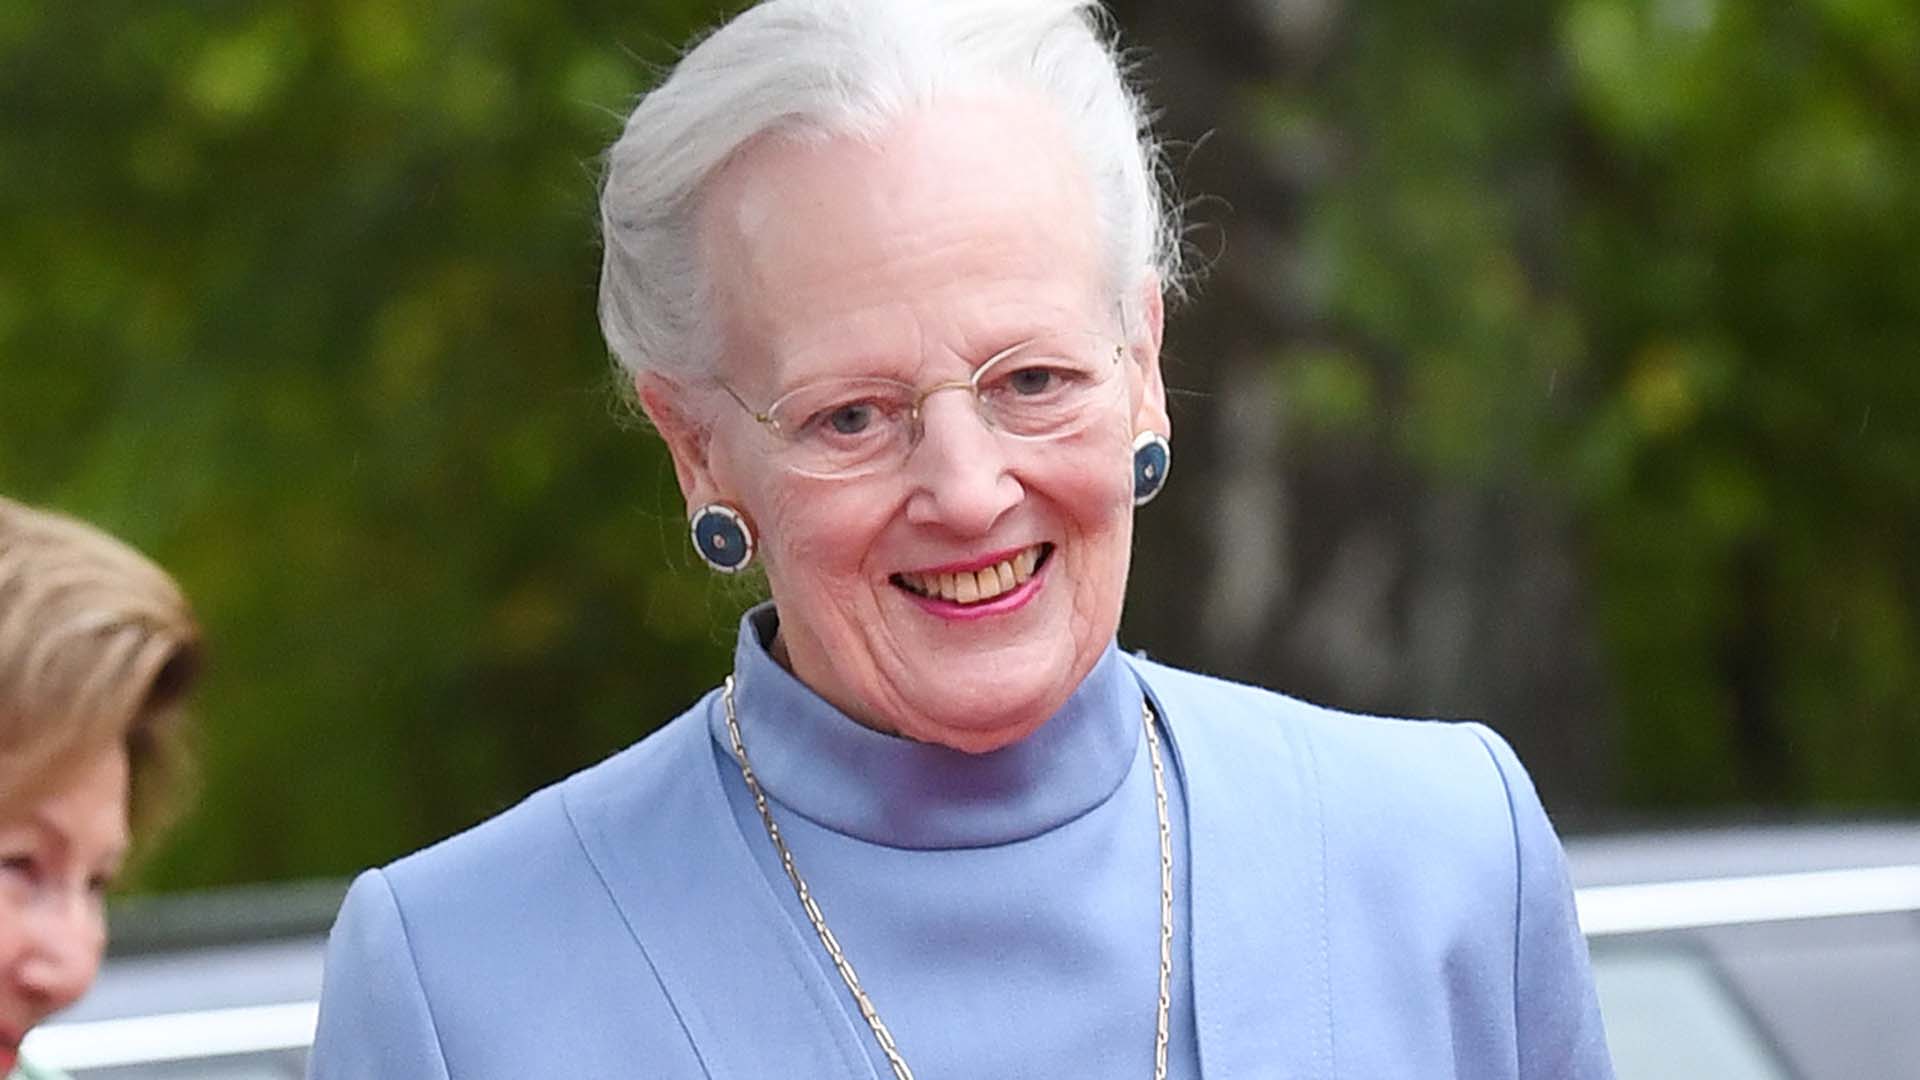 Rainha Margarida da Dinamarca retira títulos reais a quatro netos - SIC  Notícias